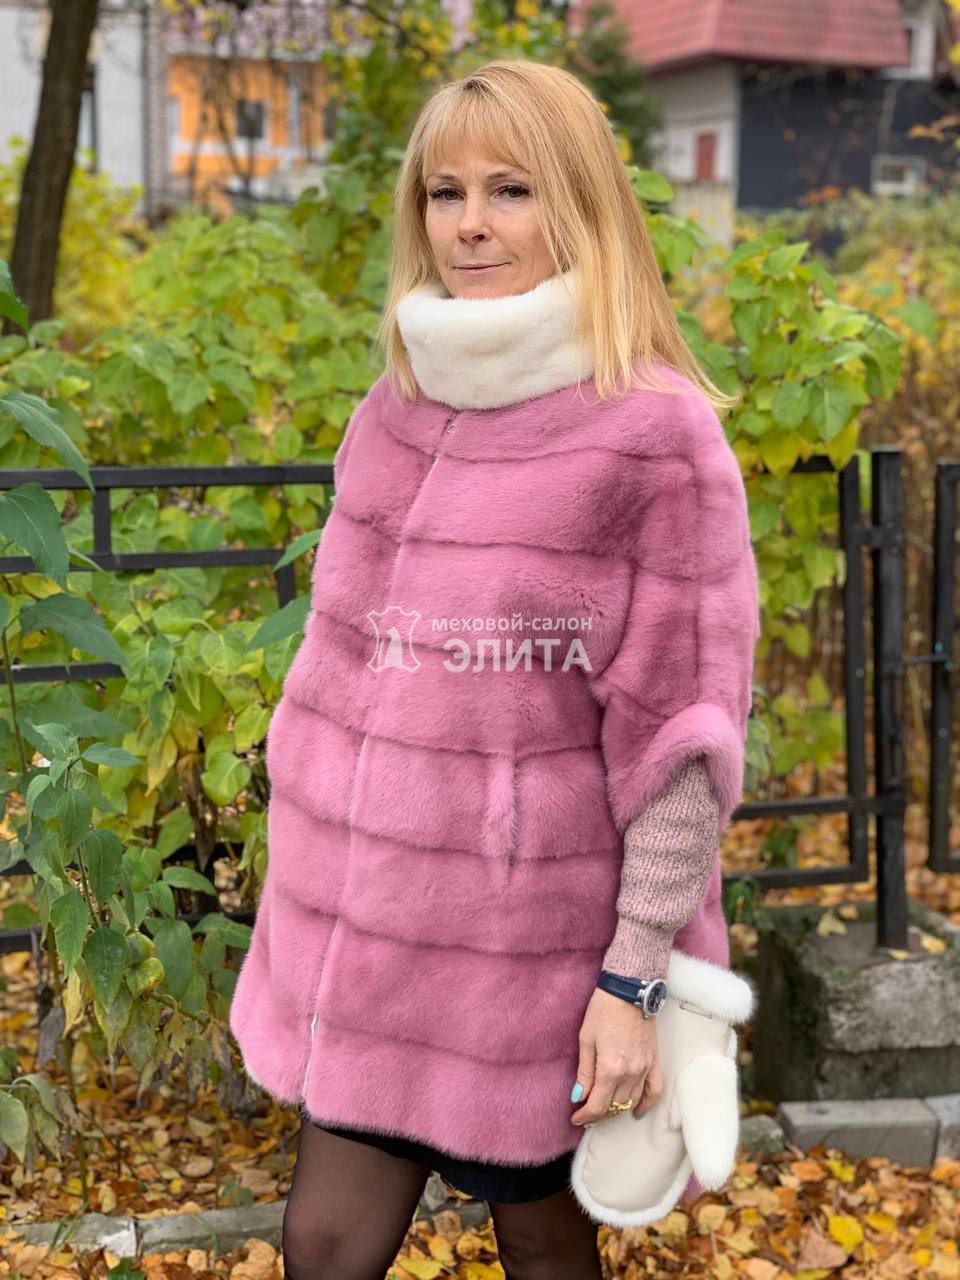 Норковый свитер S-1705 р-р 42-52., цена 83800 рублей в интернет-магазине кожи и меха ЭЛИТА. Вид 2